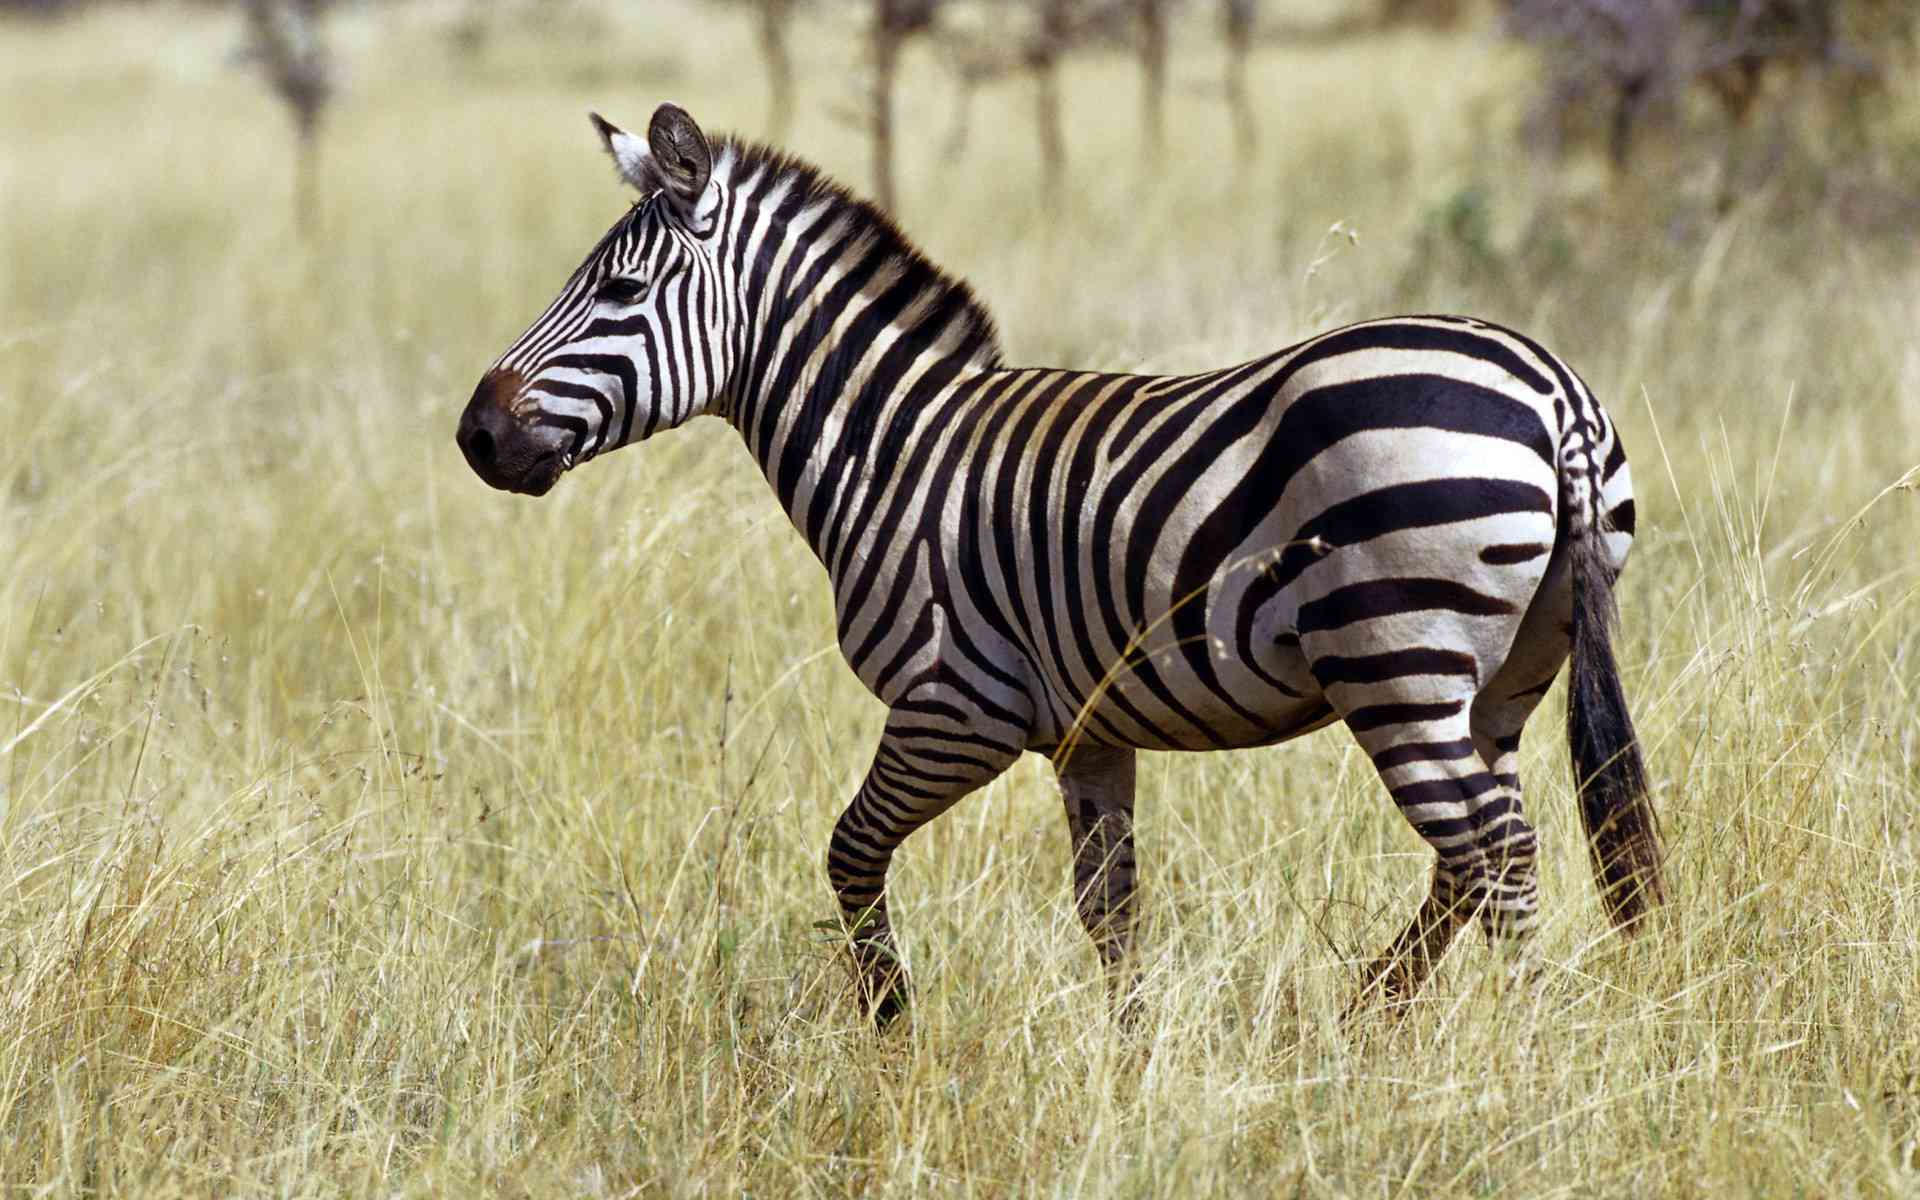 mobile desktop background free zebra s download